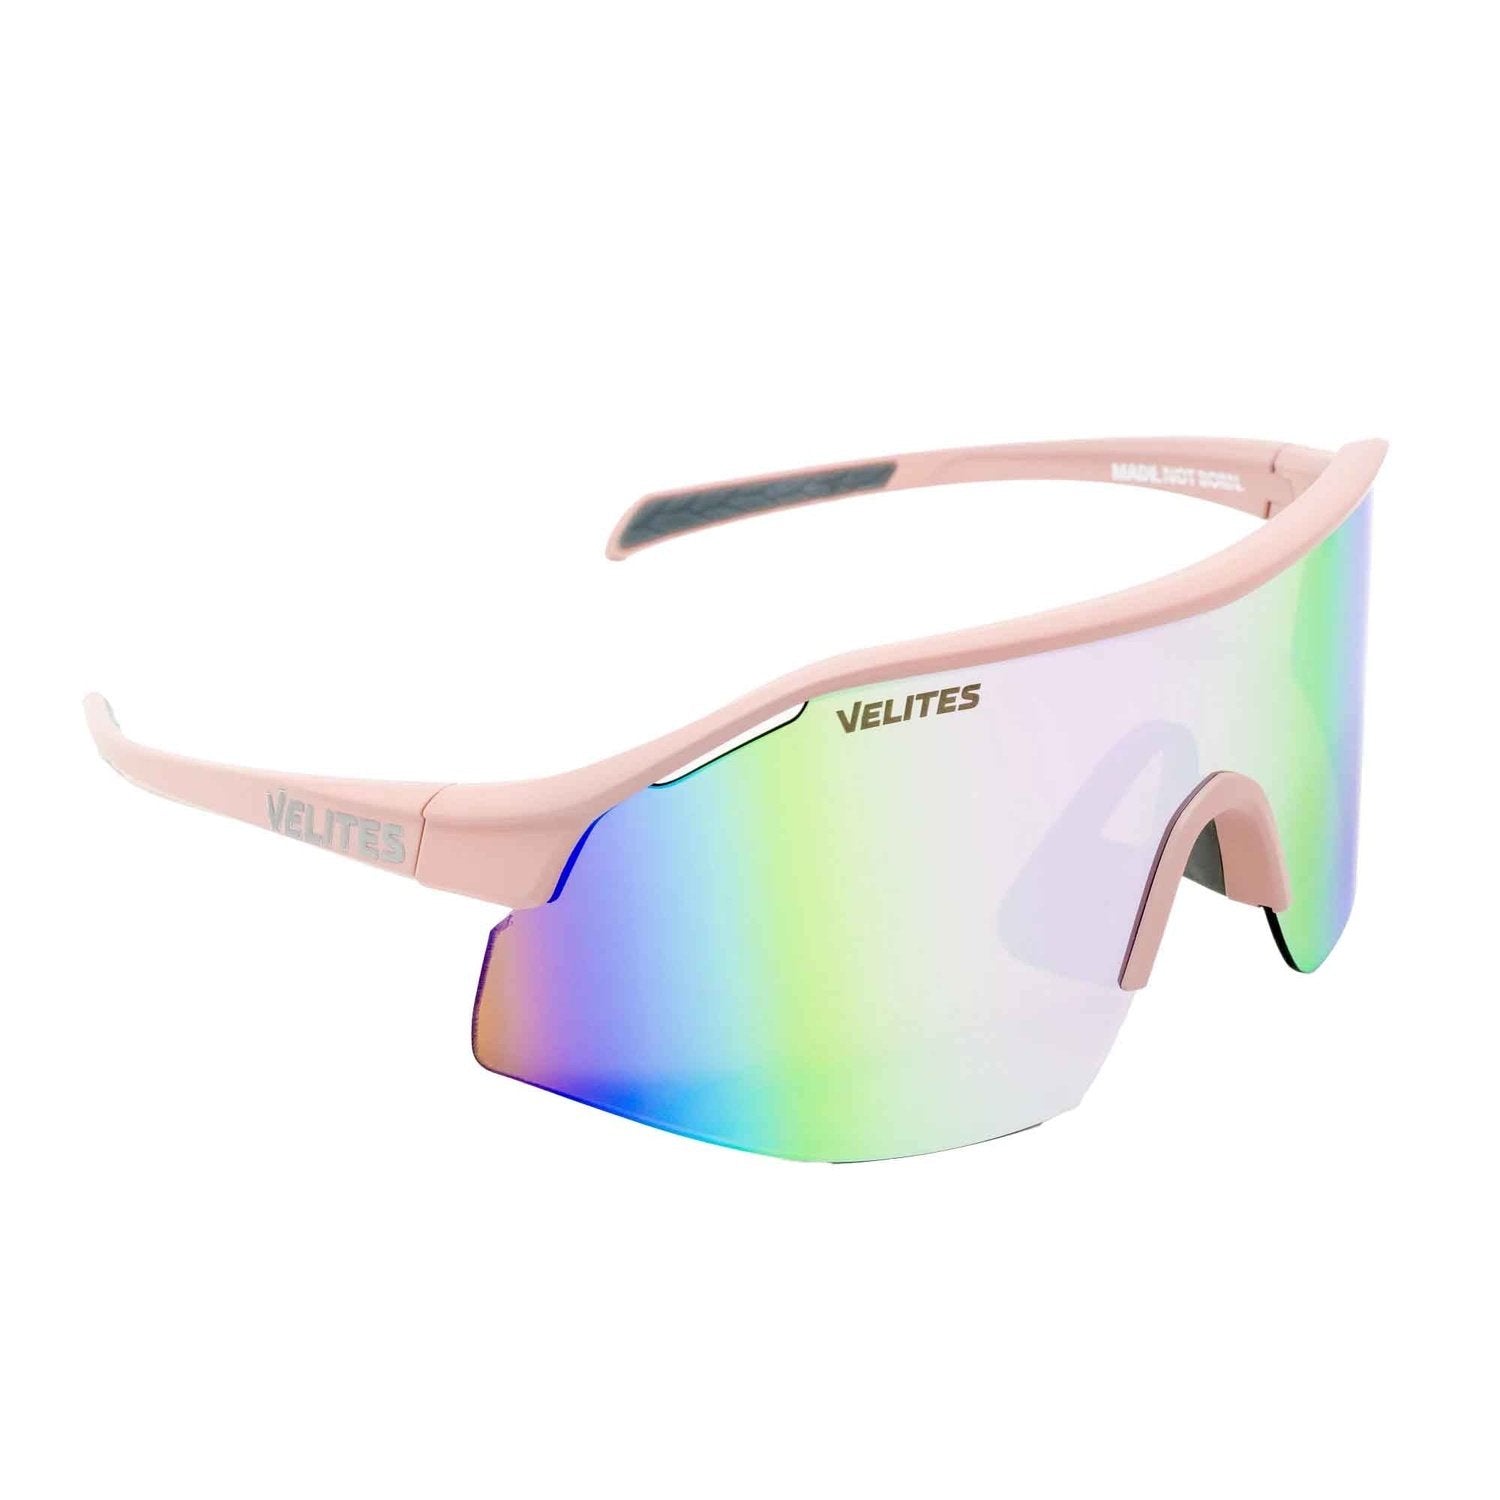 Velites Sonnenbrille "Raptor Sport" Pink Rosegold kaufen bei HighPowered.ch